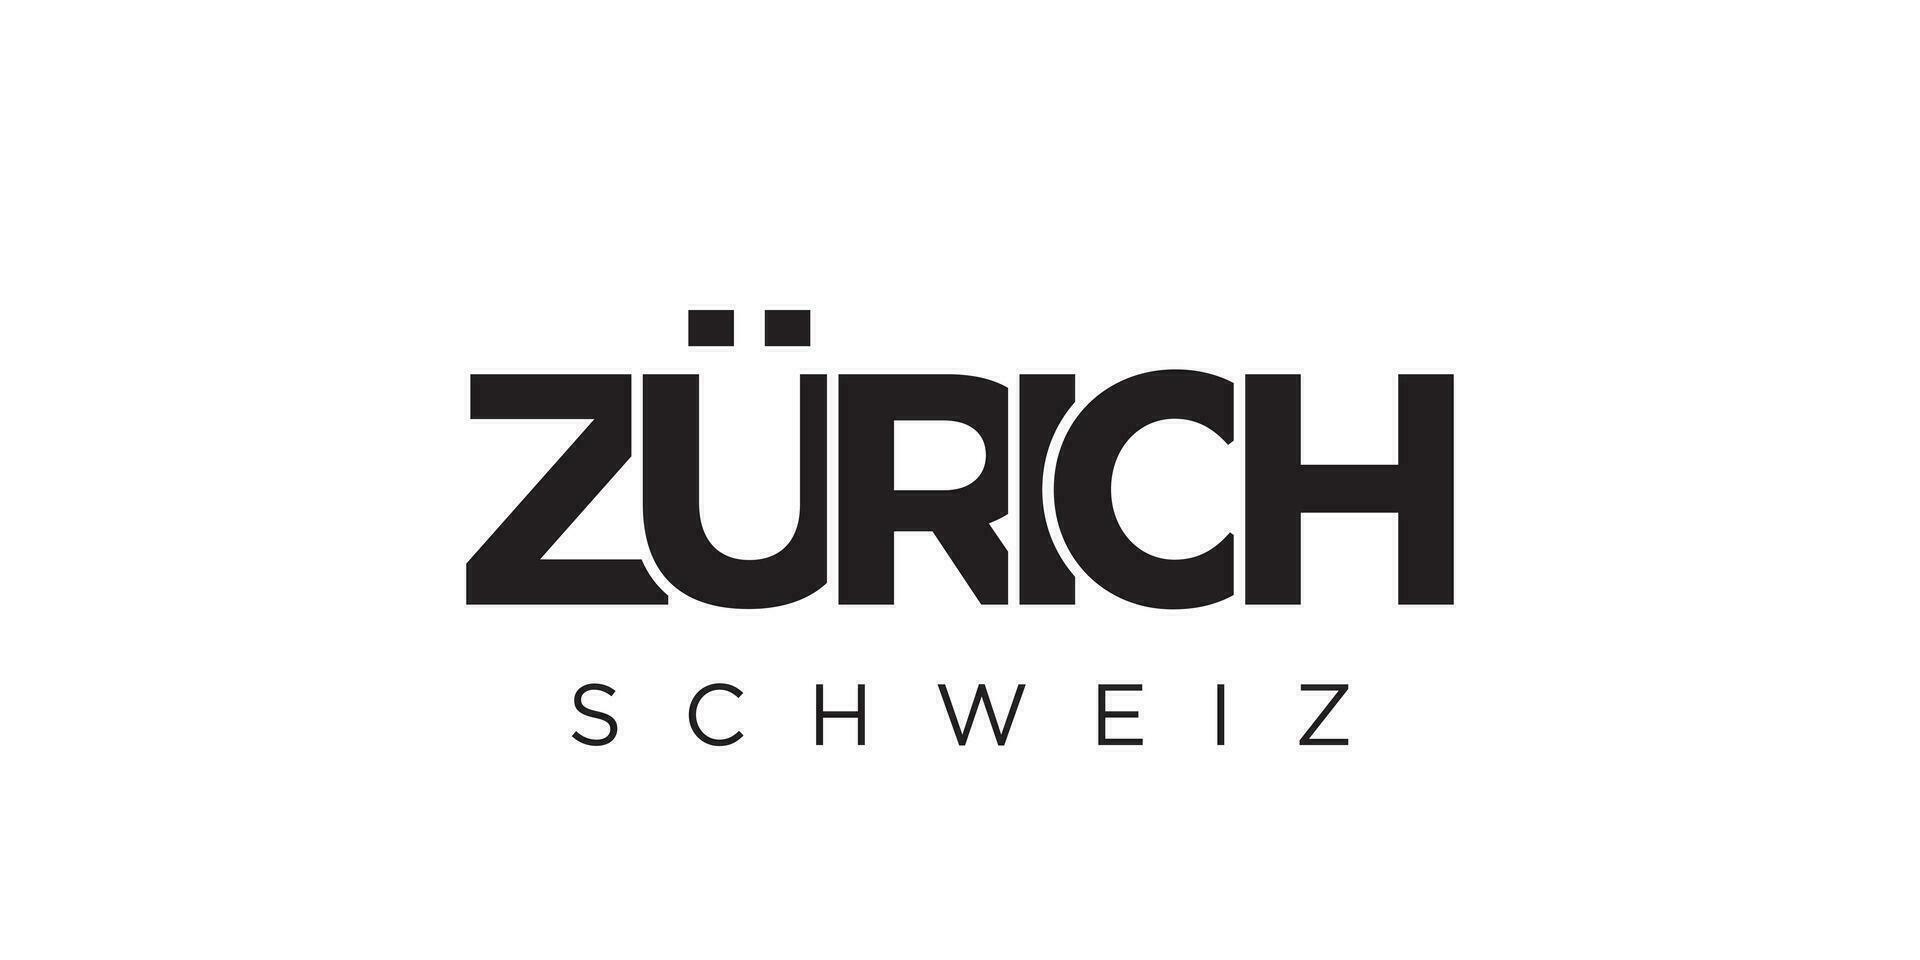 Zürich im das Schweiz Emblem. das Design Eigenschaften ein geometrisch Stil, Vektor Illustration mit Fett gedruckt Typografie im ein modern Schriftart. das Grafik Slogan Beschriftung.